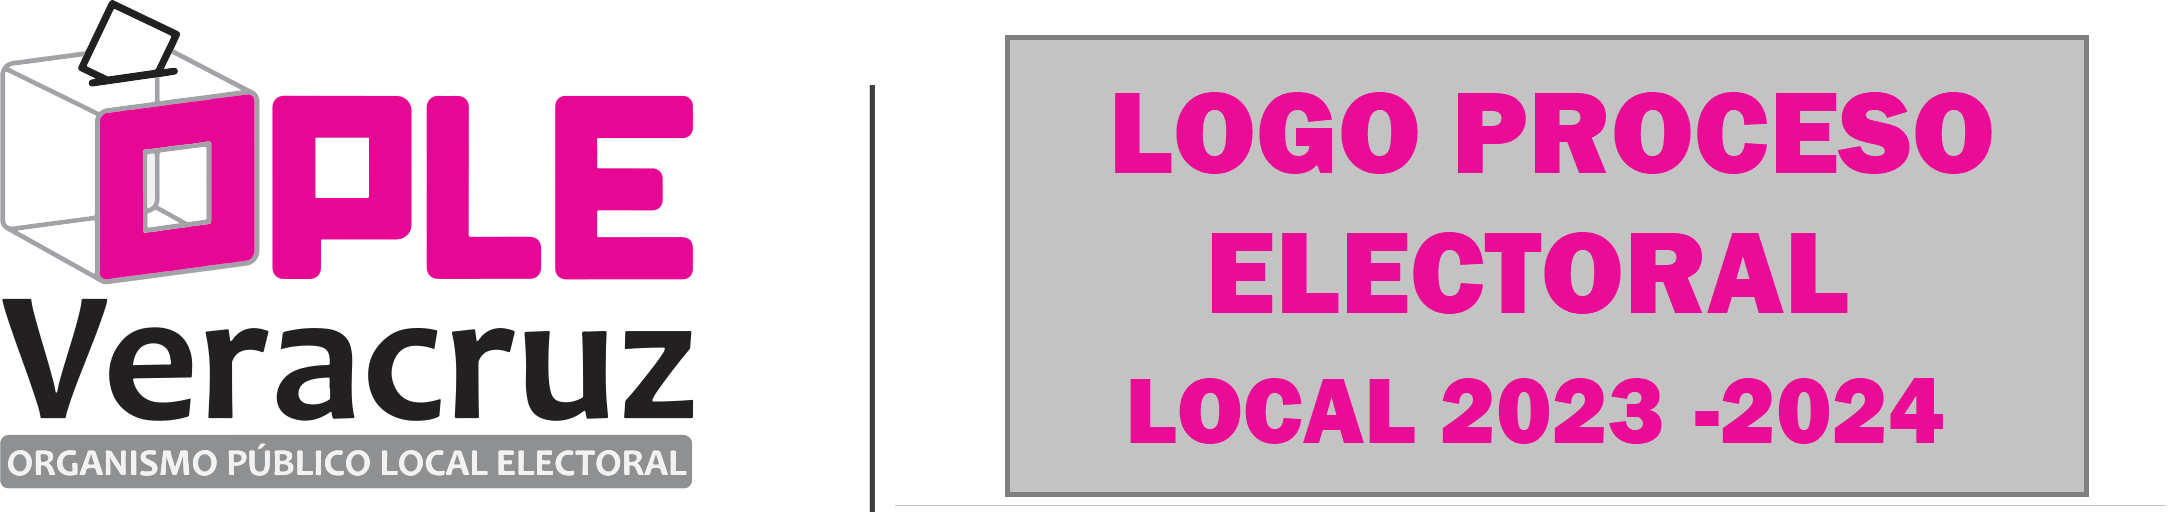 OPLE Veracruz y REDEM Logos